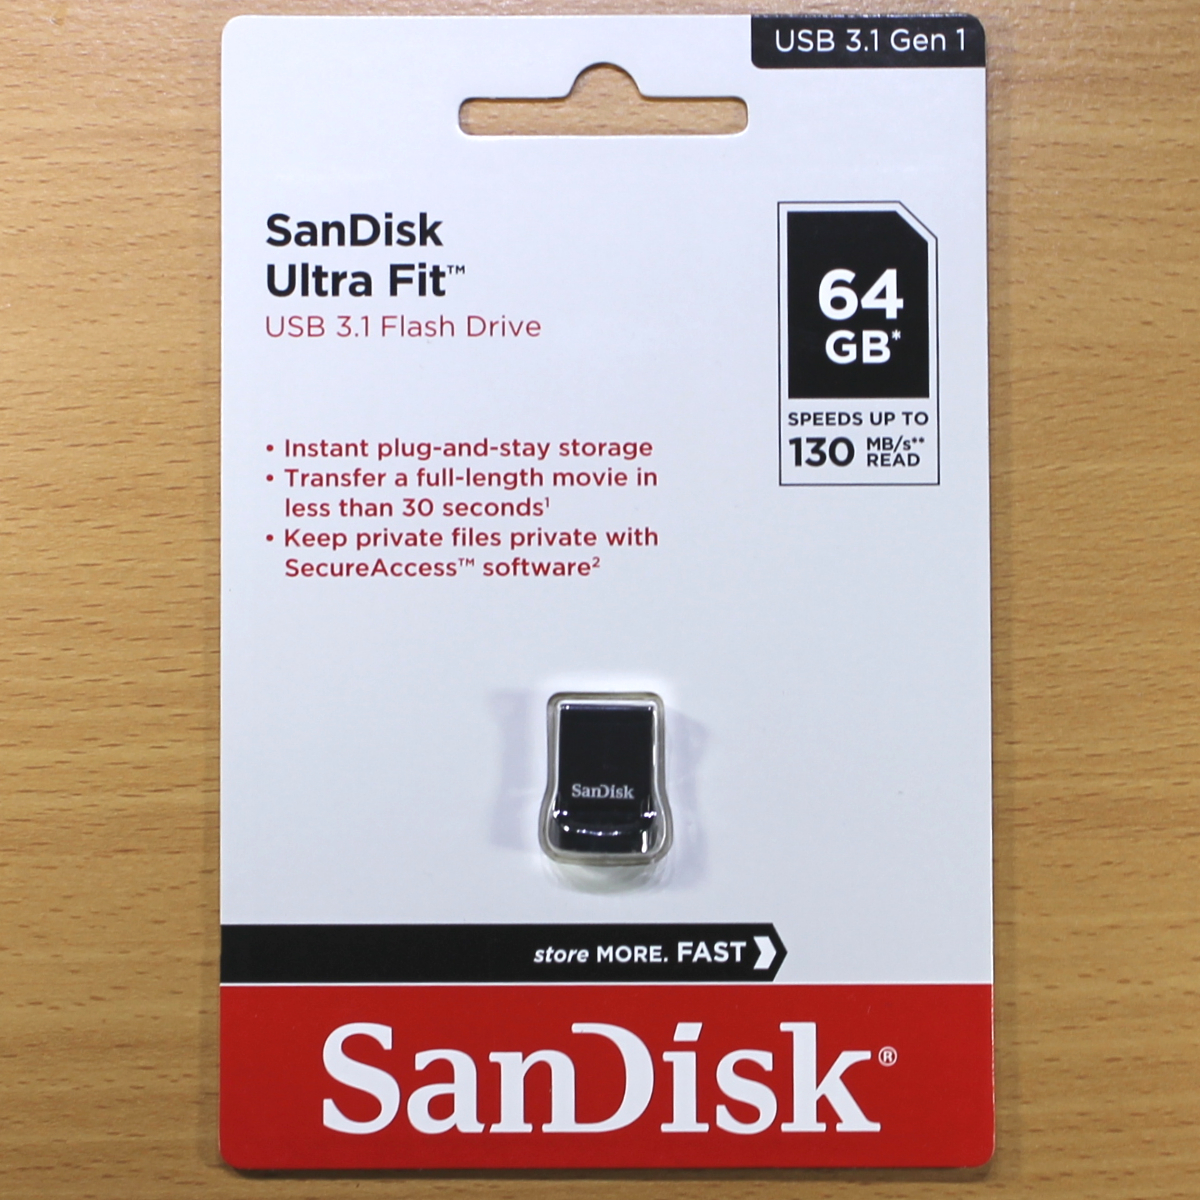 素敵でユニークな USBメモリ [並行輸入品] 超小型 Gen1対応 3.1 USB Fit Ultra サンディスク 512GB - ICレコーダー